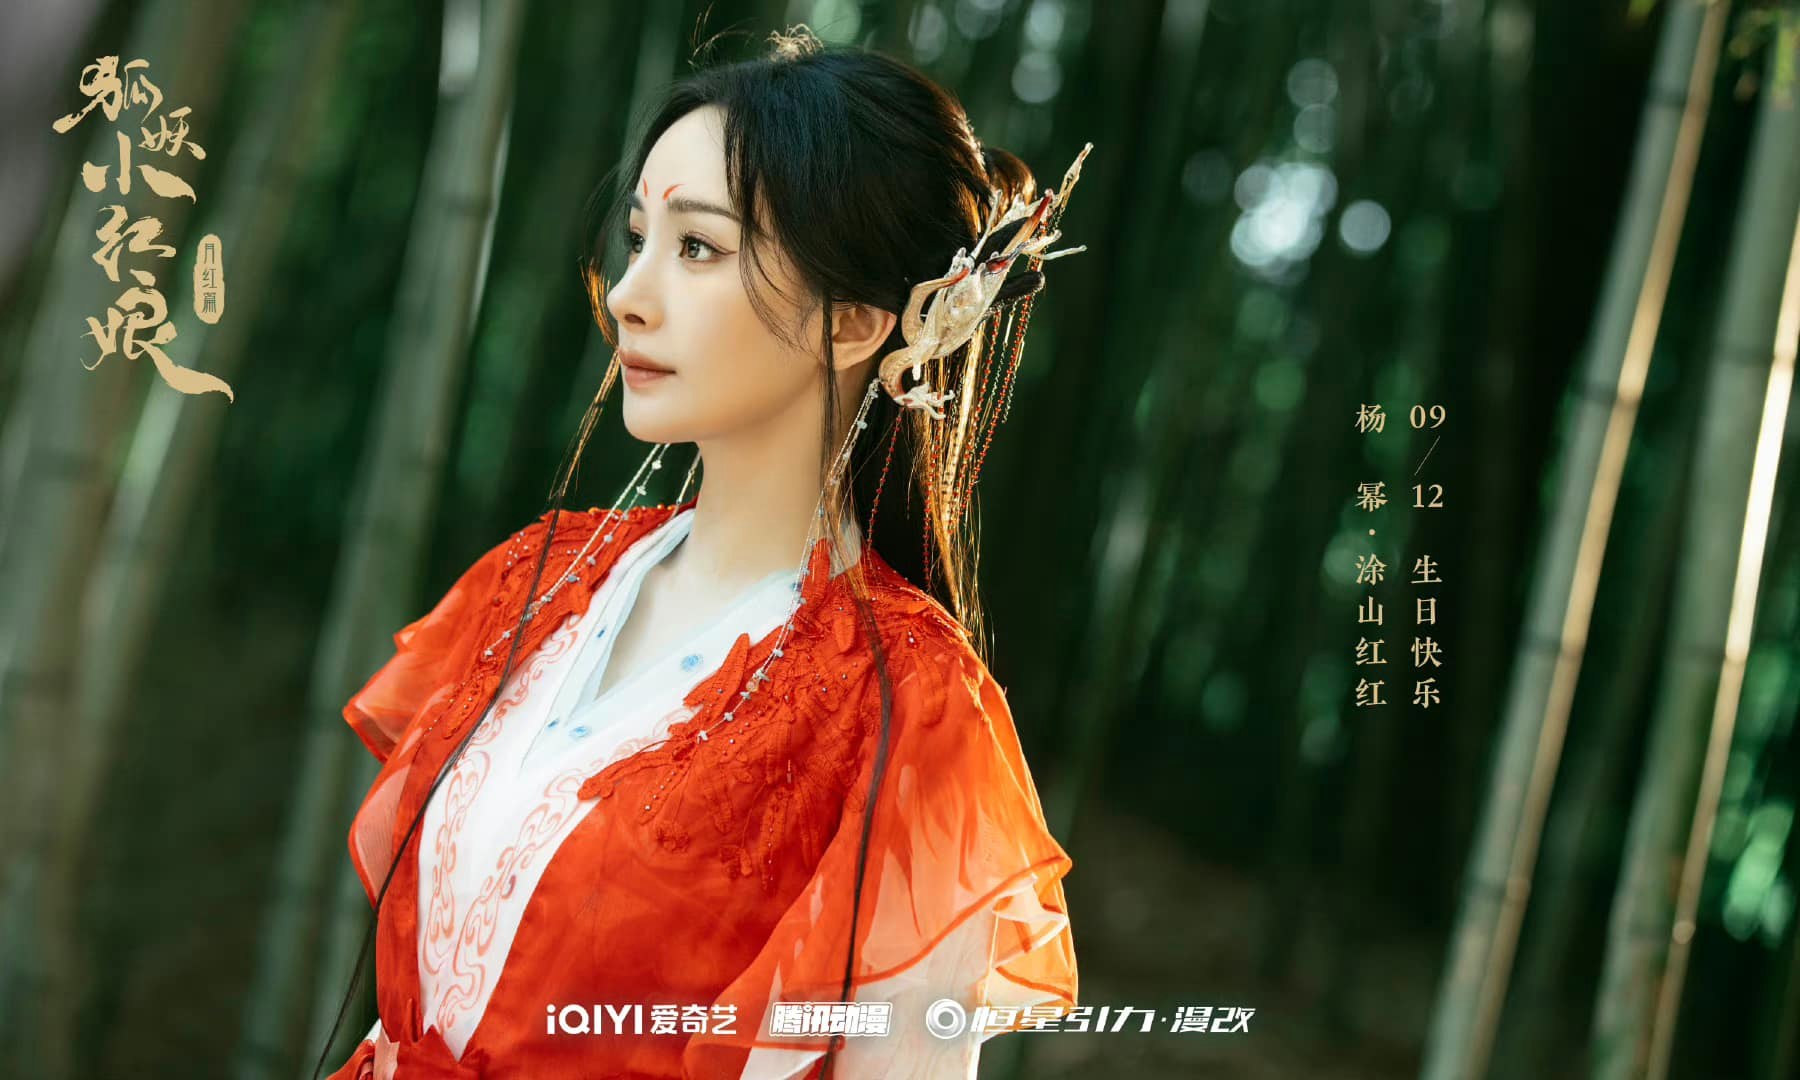 Hồ Yêu Tiểu Hồng Nương: Nguyệt Hồng Thiên đạt 3 triệu lượt đặt xem trước, fan mong lịch chiếu sớm - ảnh 5